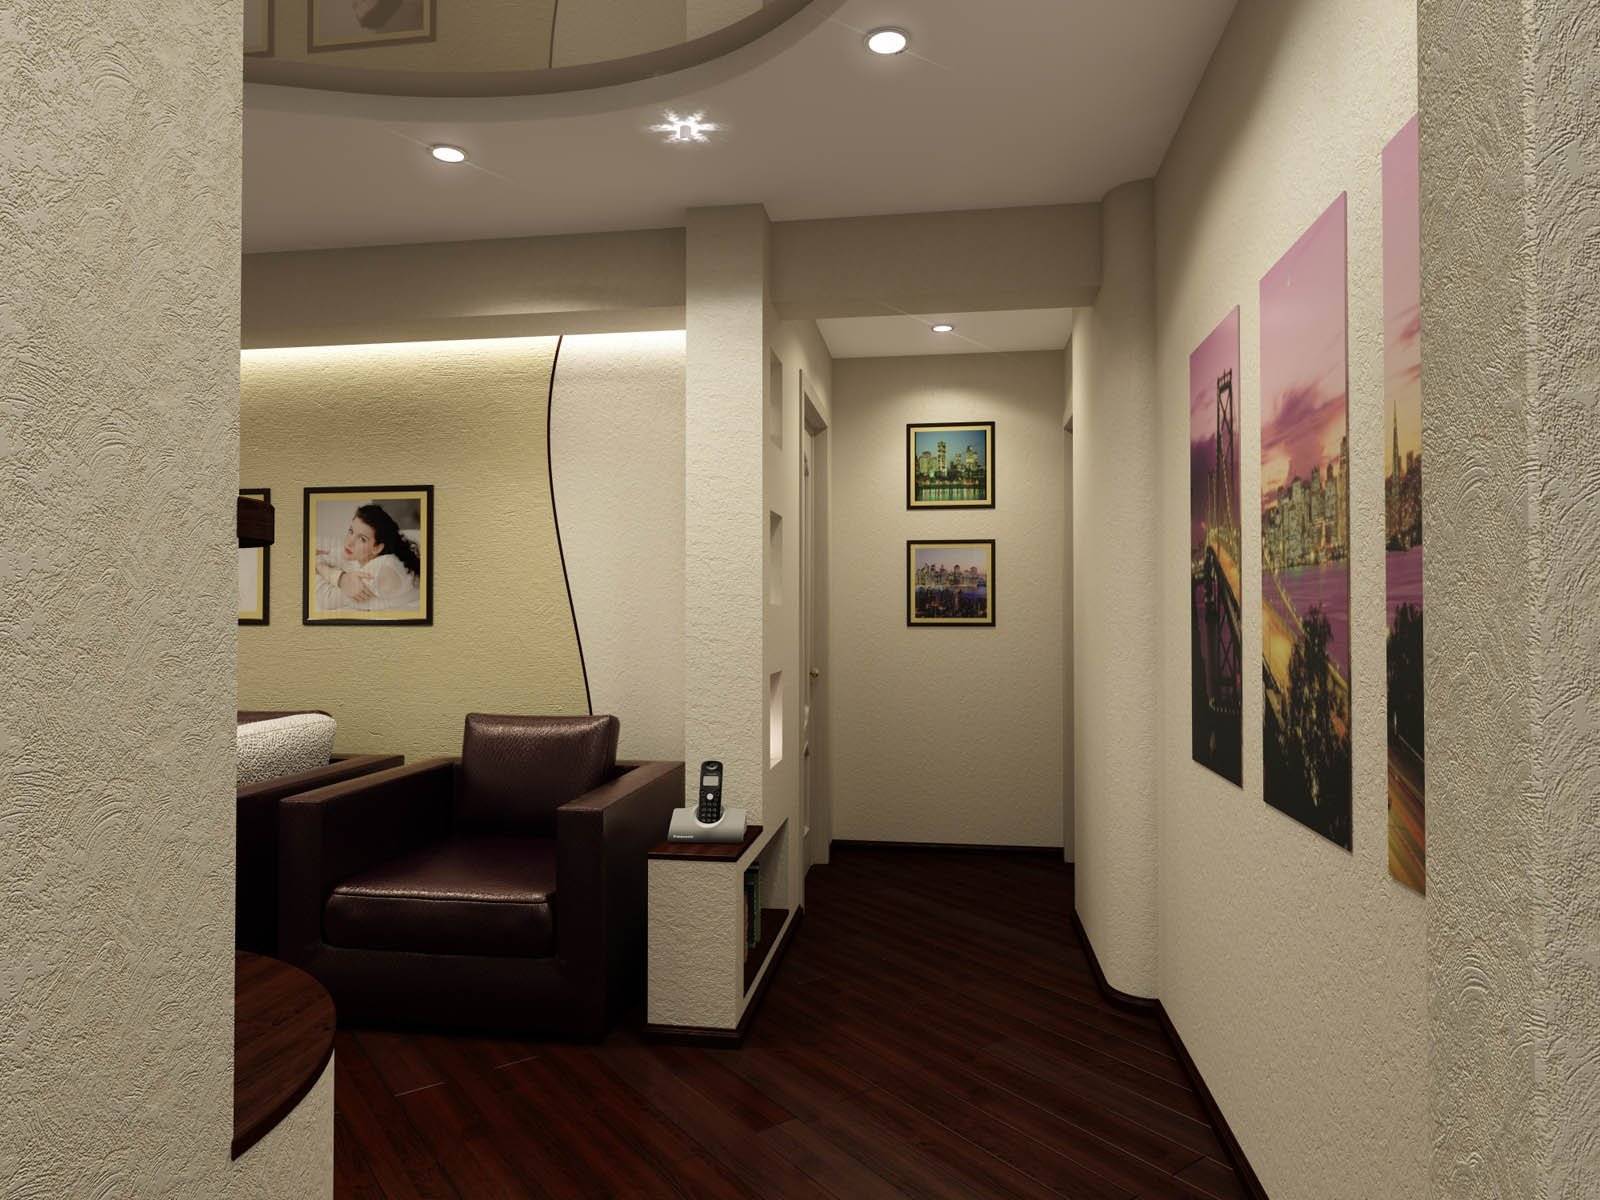 Дизайн проходной гостиной: как сделать комнату по-настоящему комфортной